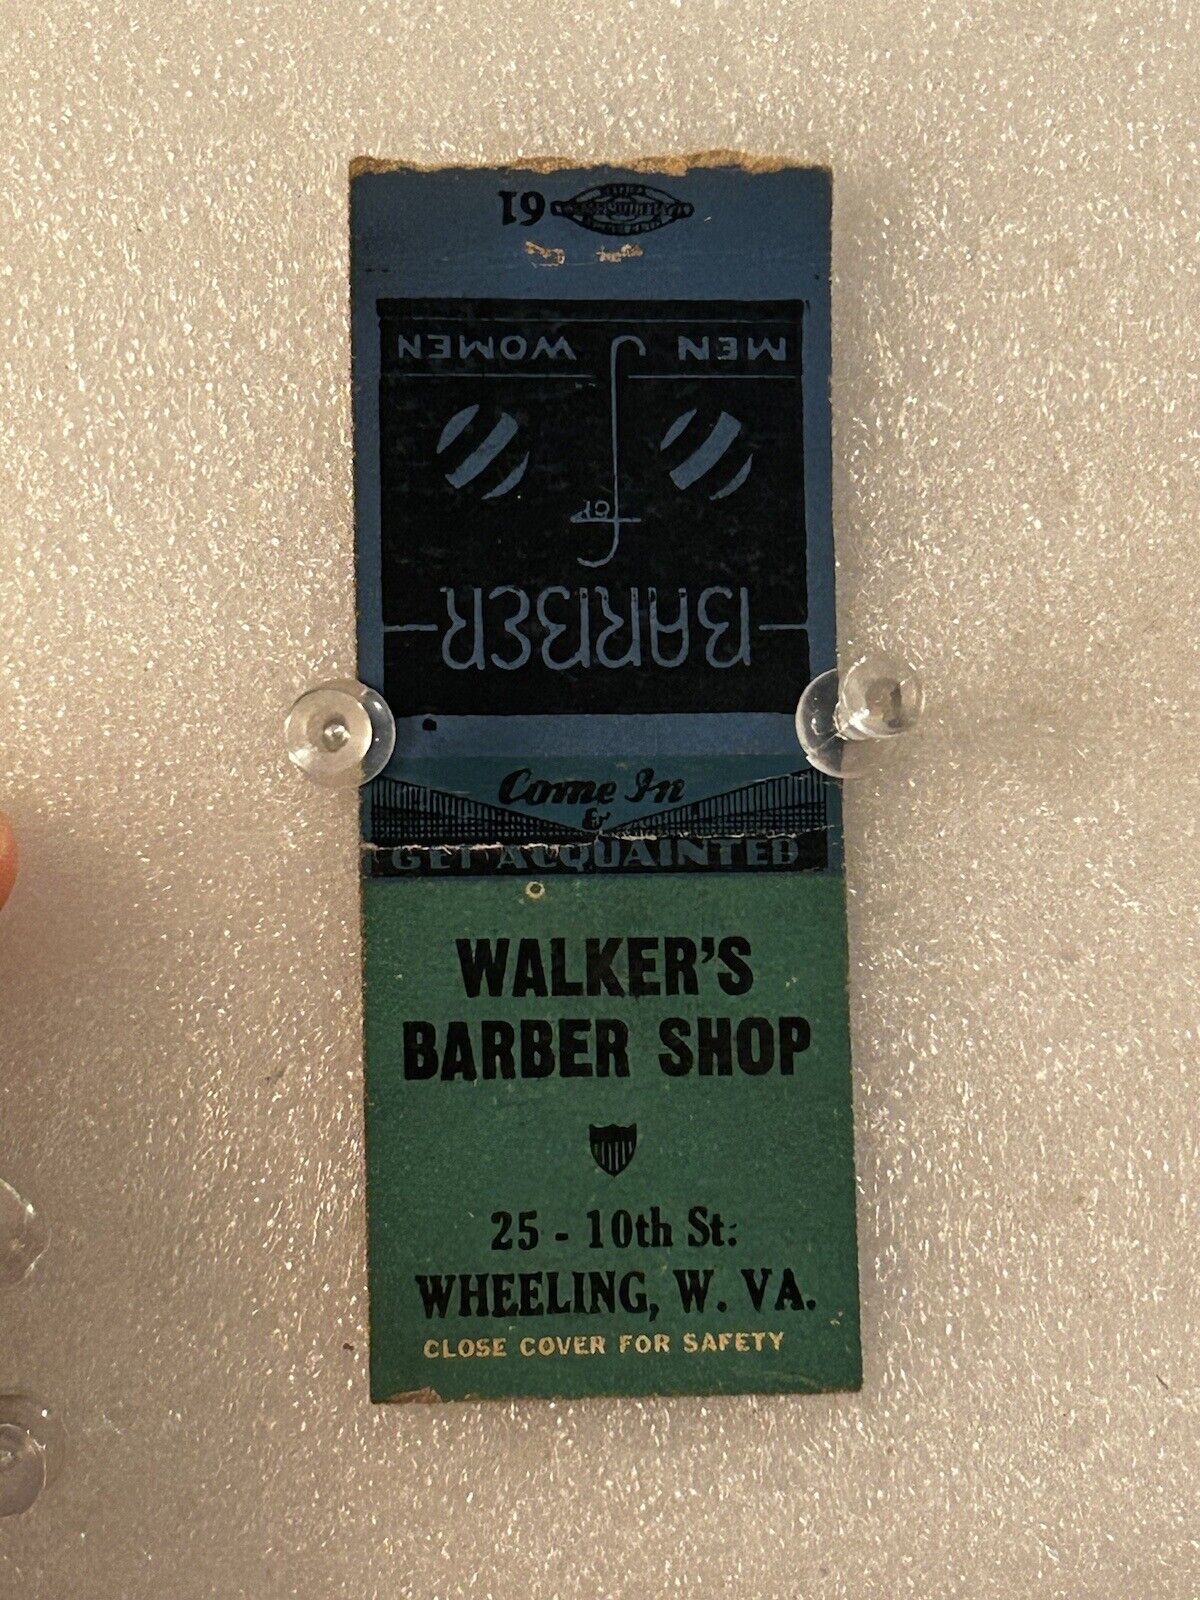 Wheeling West Virginia Walkers Barbershop Vintage Matchbook 